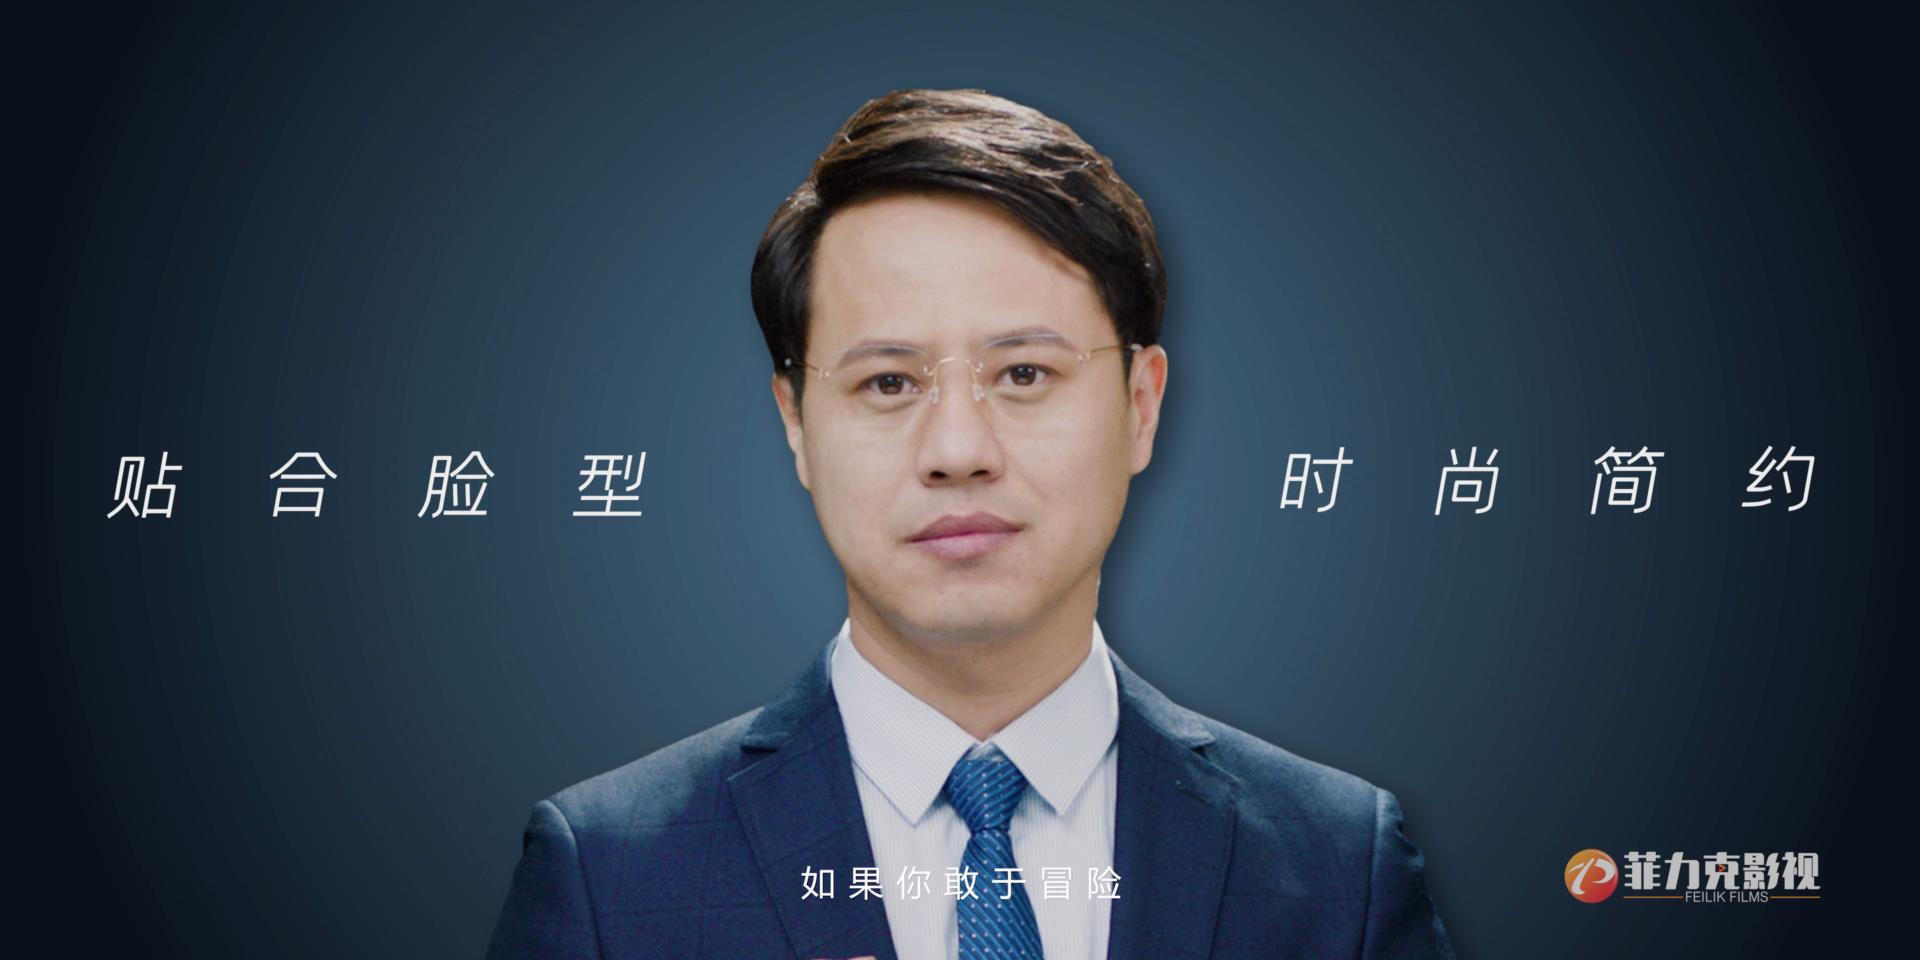 私人定制眼镜 - 河南广告片拍摄公司/郑州菲力克影视制作公司